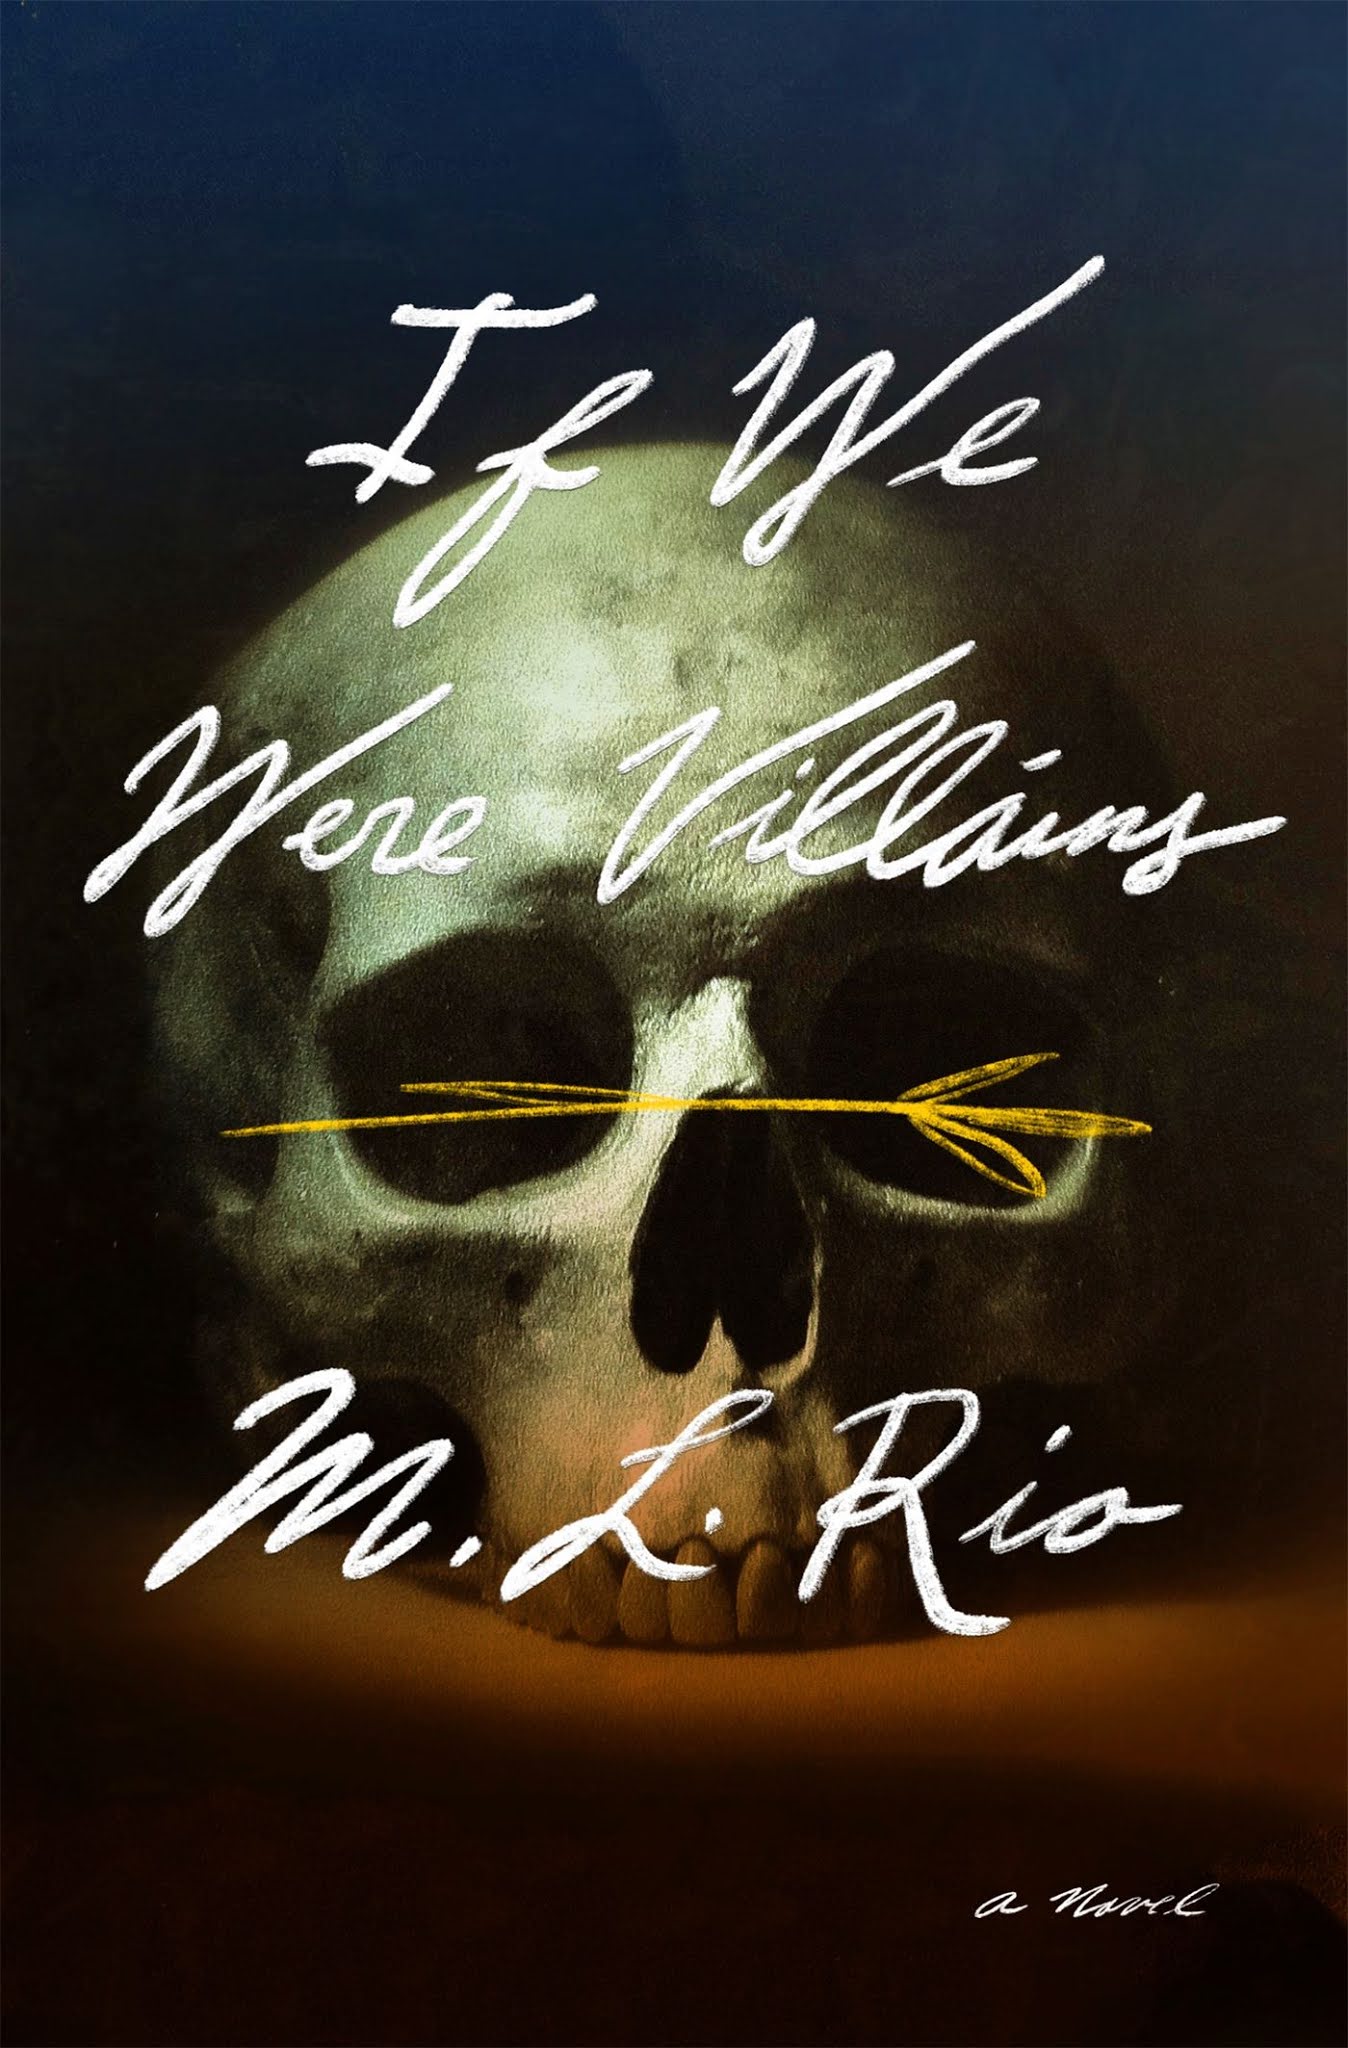 La gata y la luna - Todos somos villanos de M.L. RIO, un drama sangriento  sobre el amor, la amistad y la obsesión: “El día que Oliver Marks cumple su  condena, el